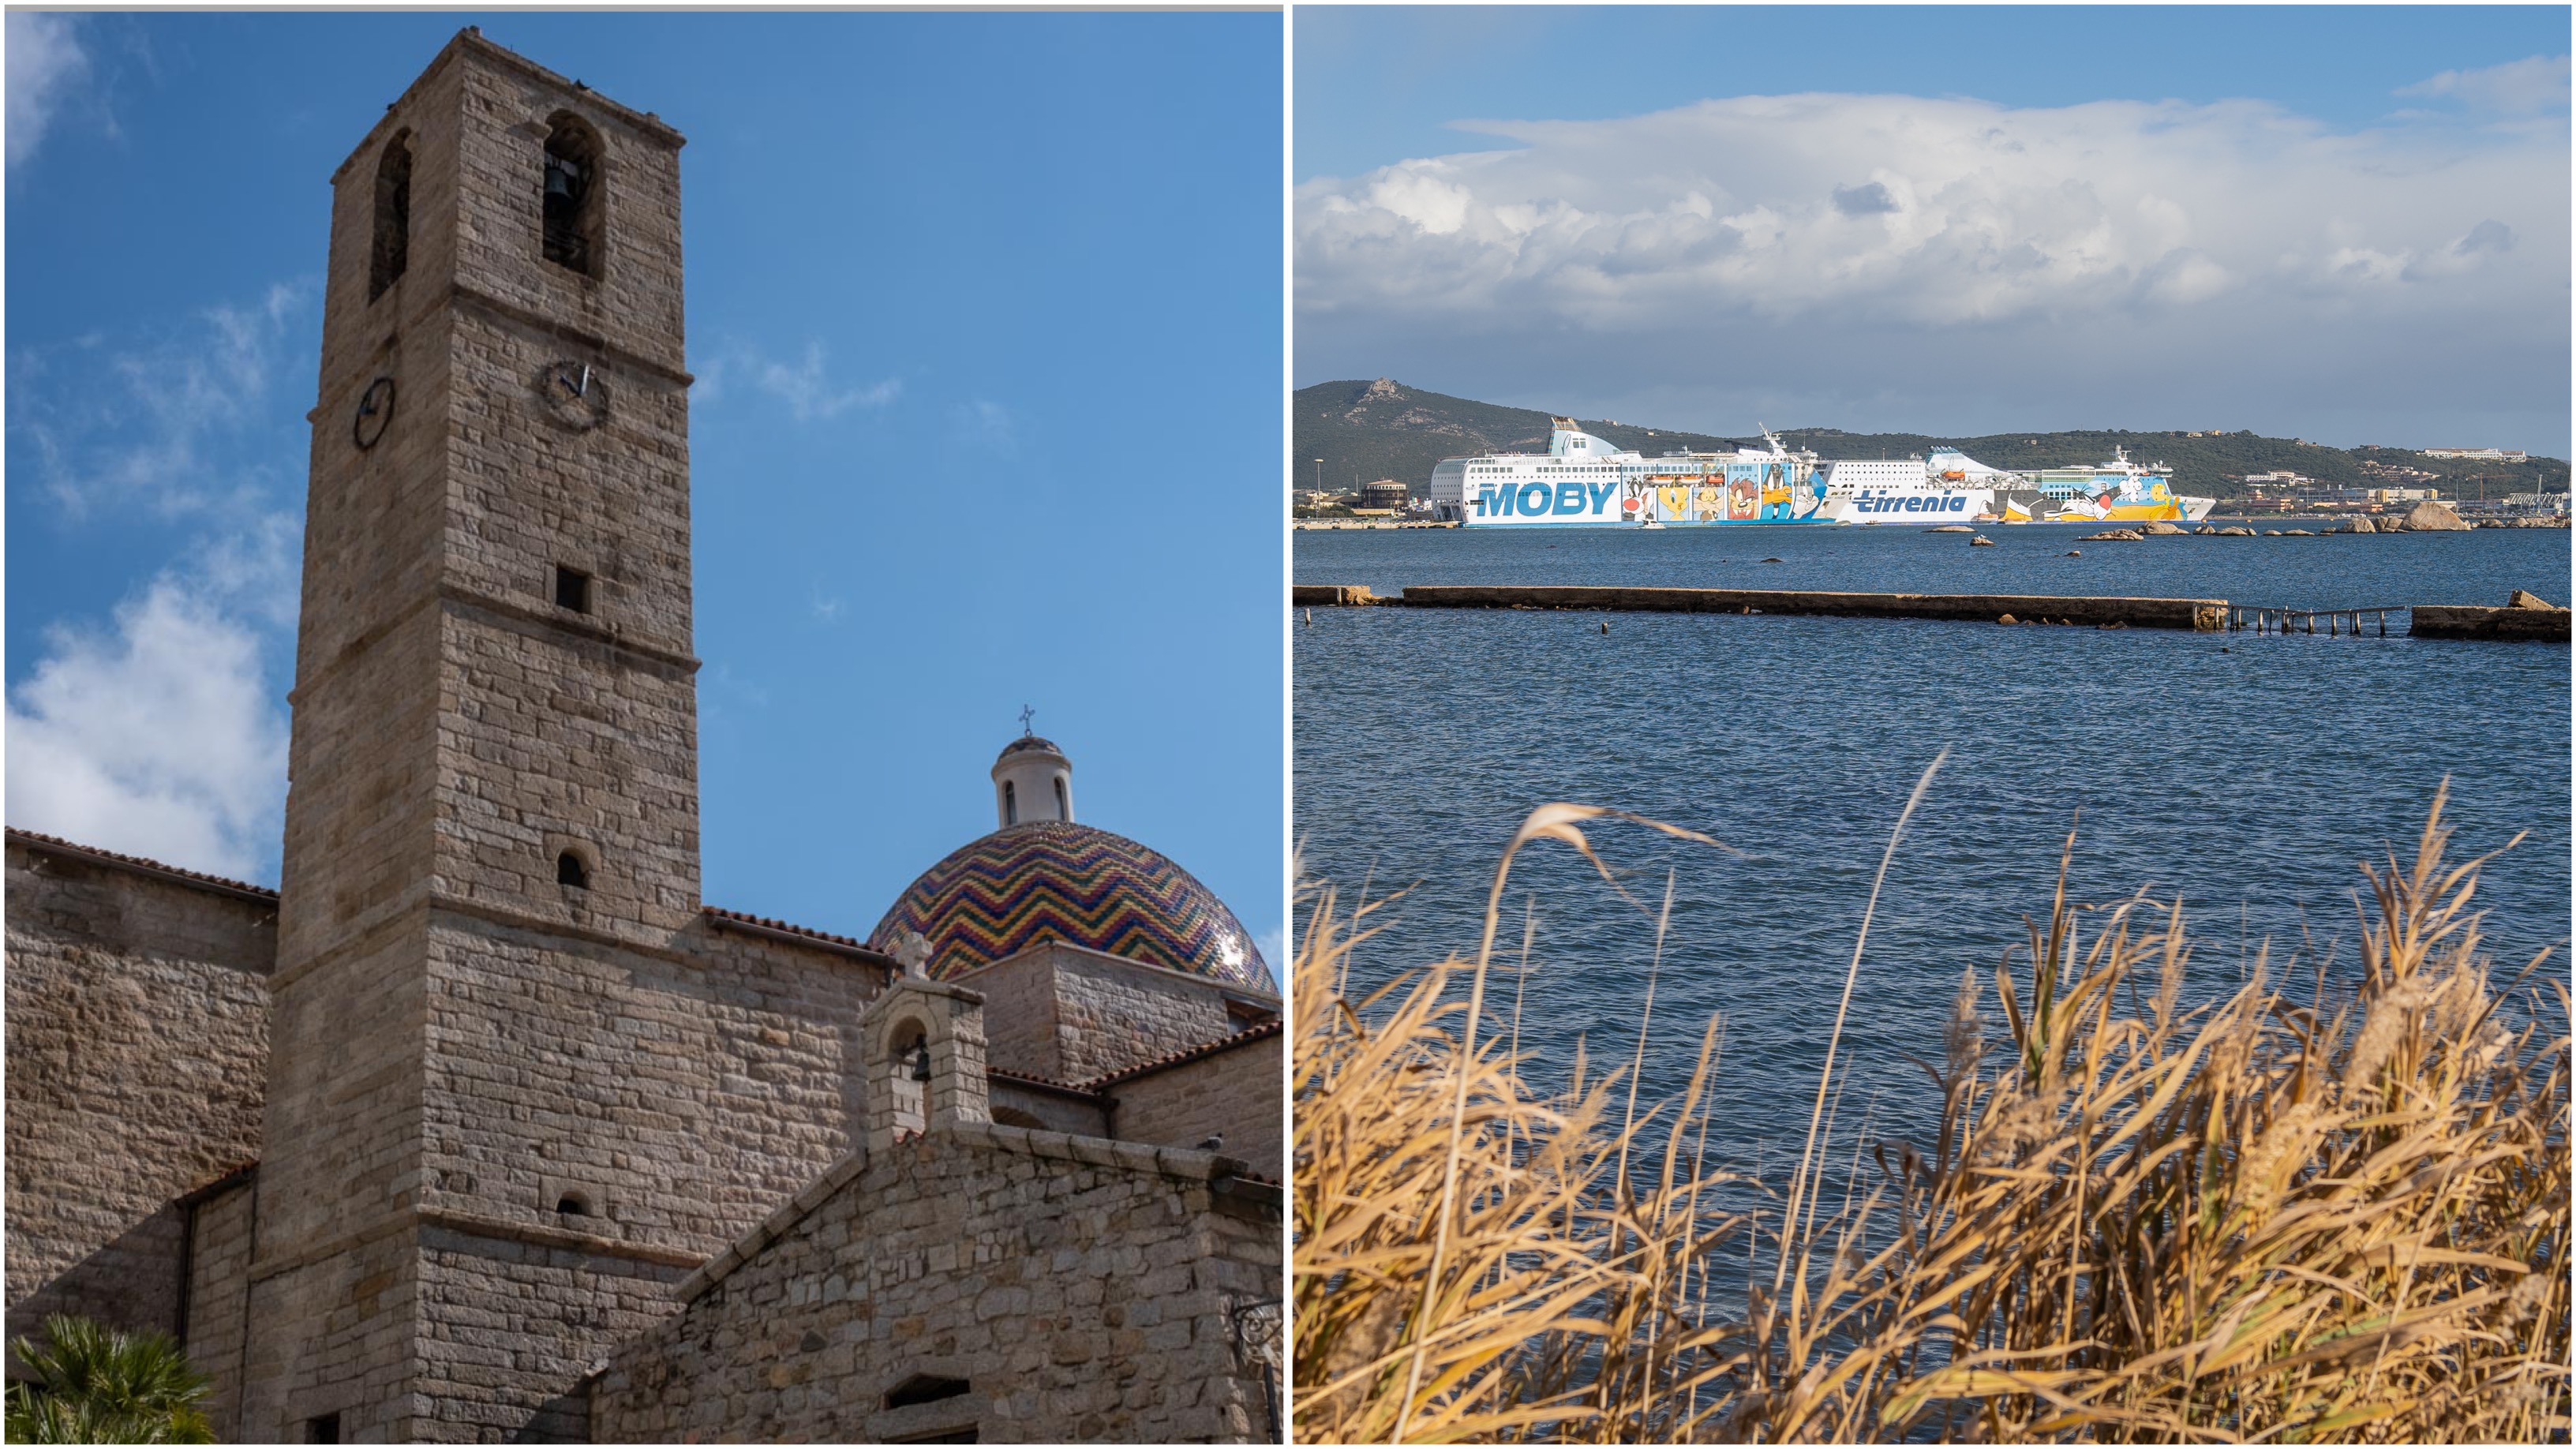 Sardegna, è quella marittima la vocazione turistica prevalente: importante anche quella storica